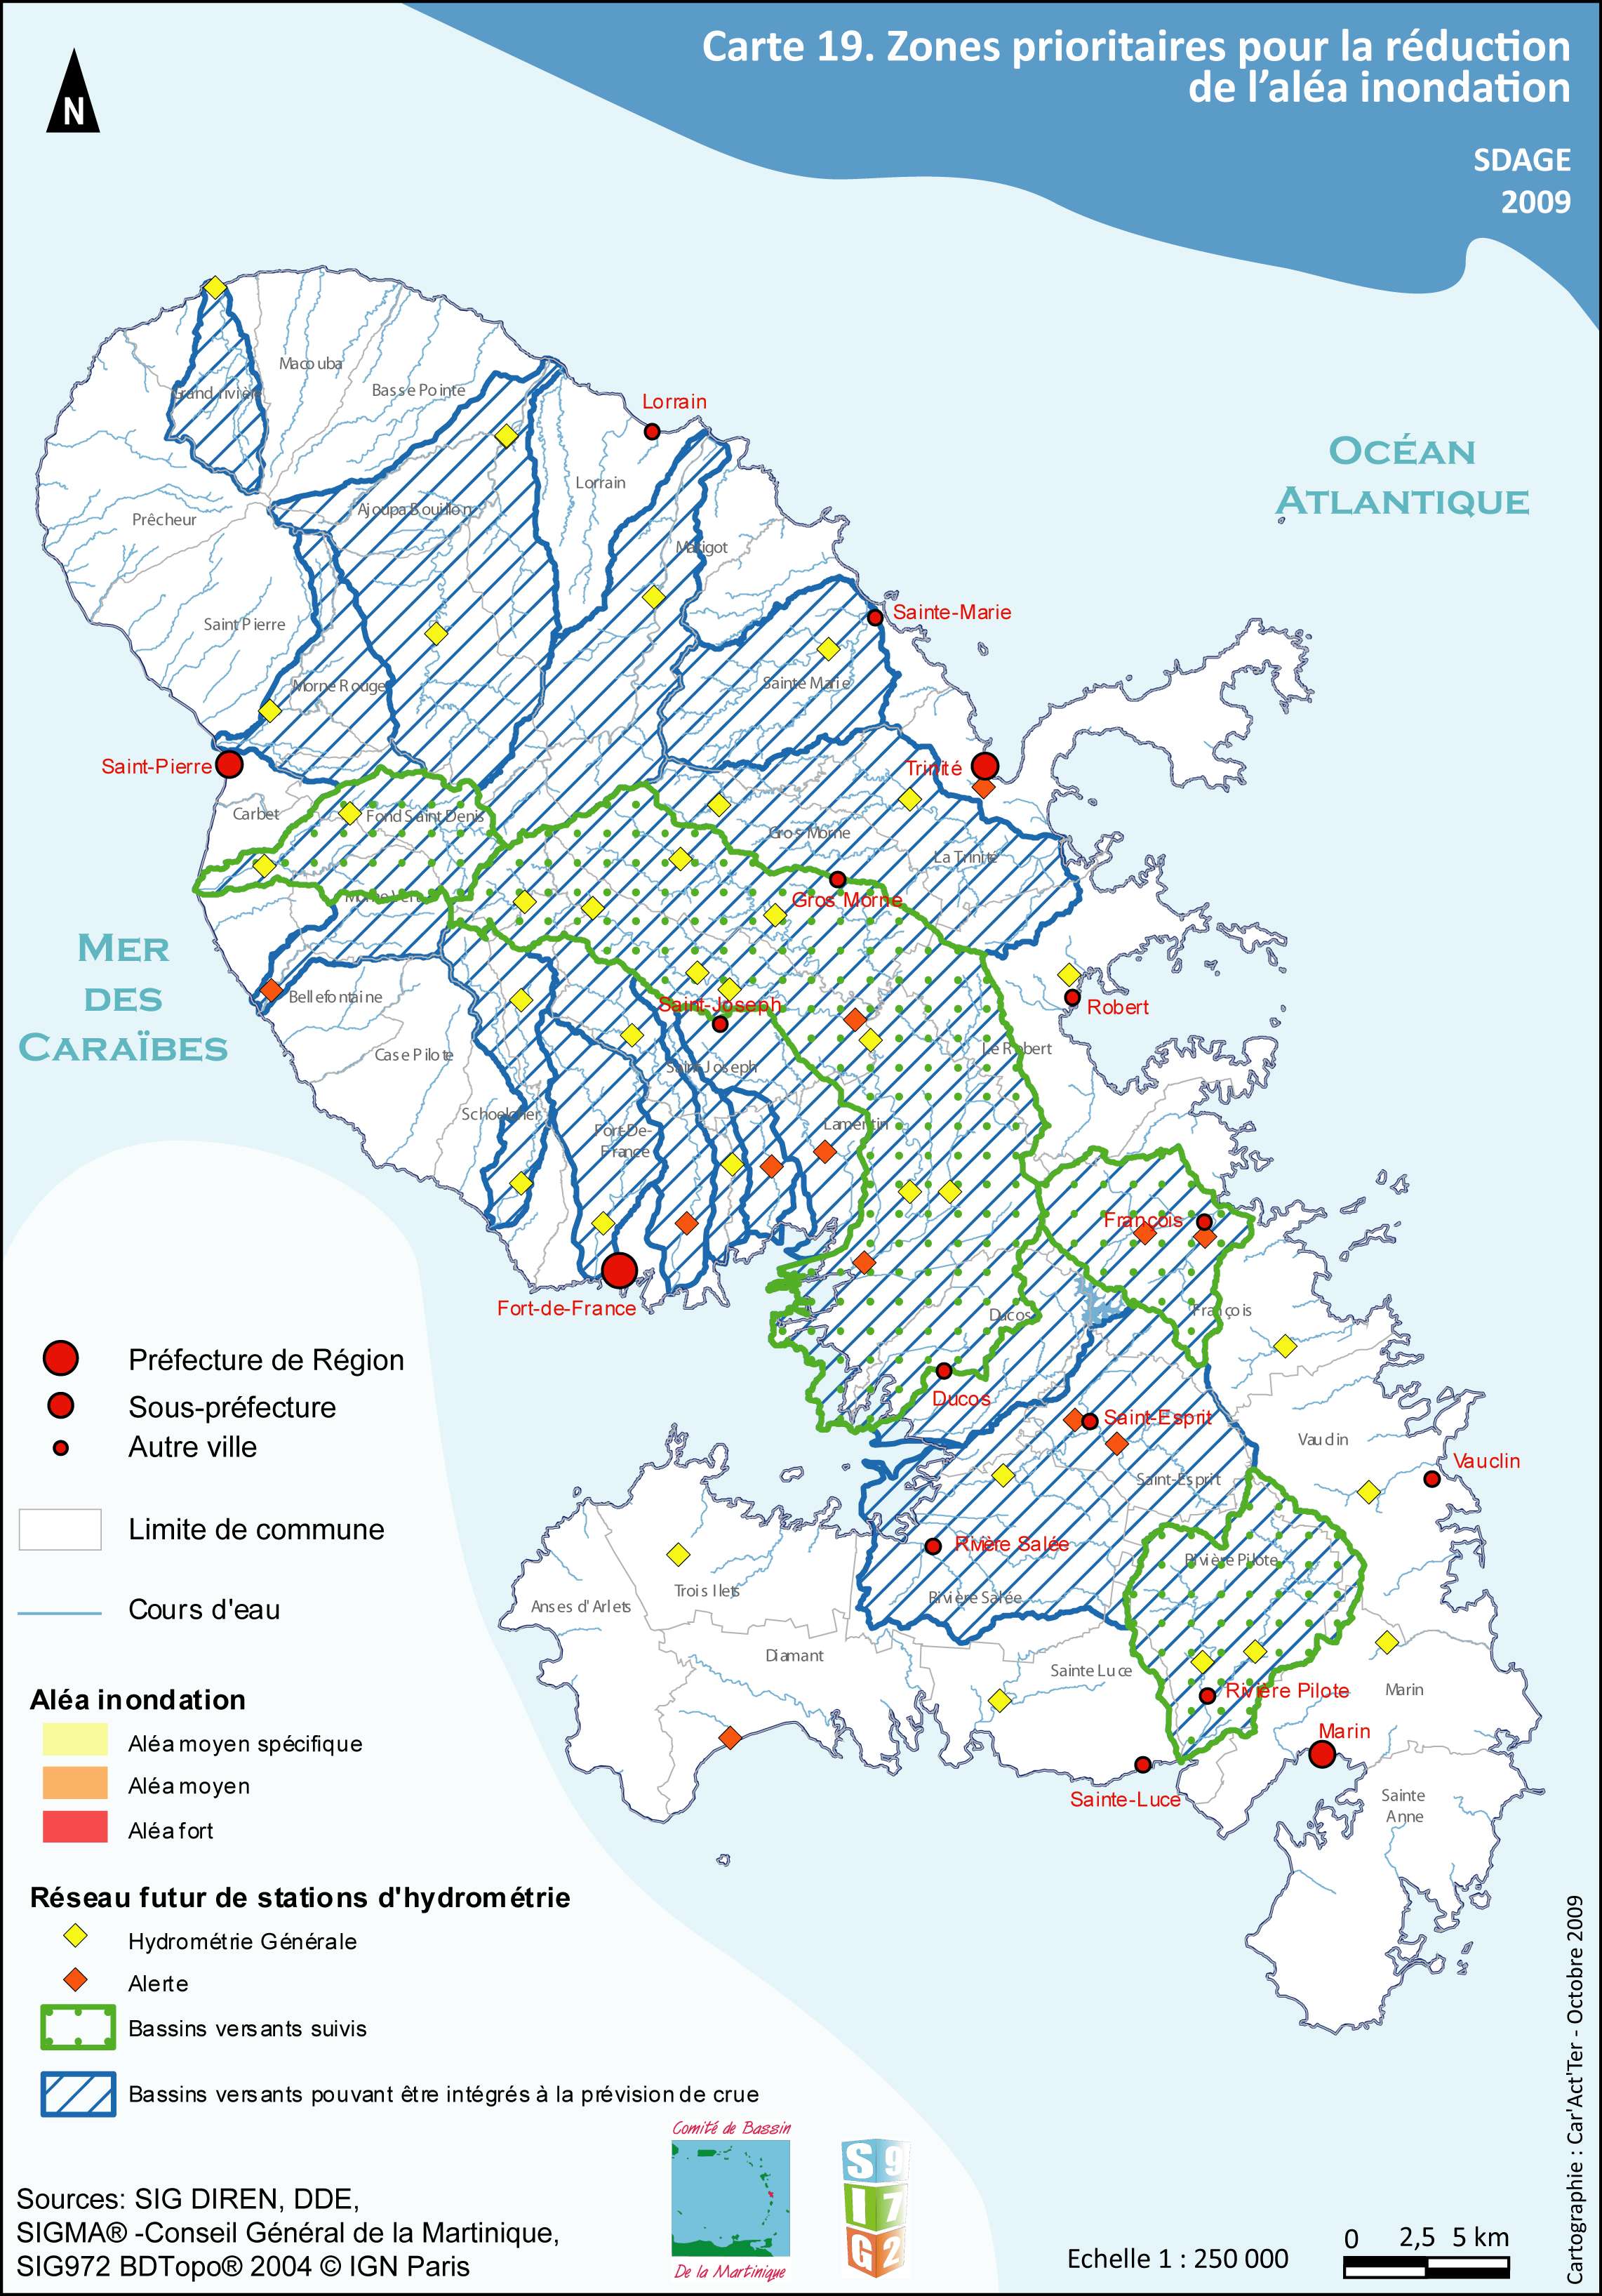 SDAGE 2010-2015 - Carte 19- Zones prioritaires pour la réduction de l’aléa inondation